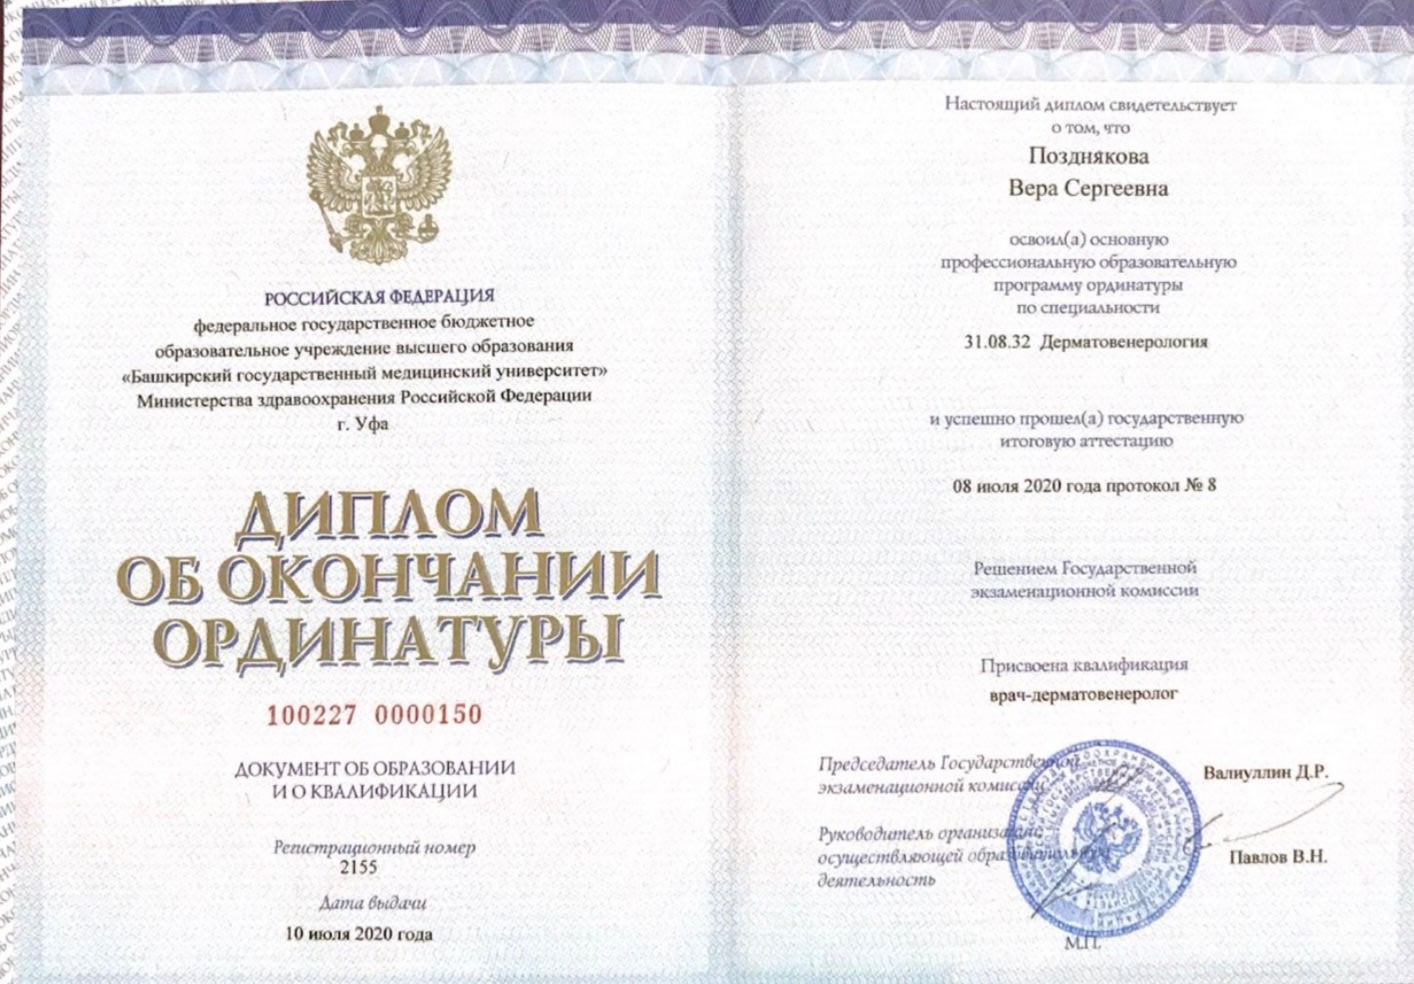 Сертификат Поздняковой Веры